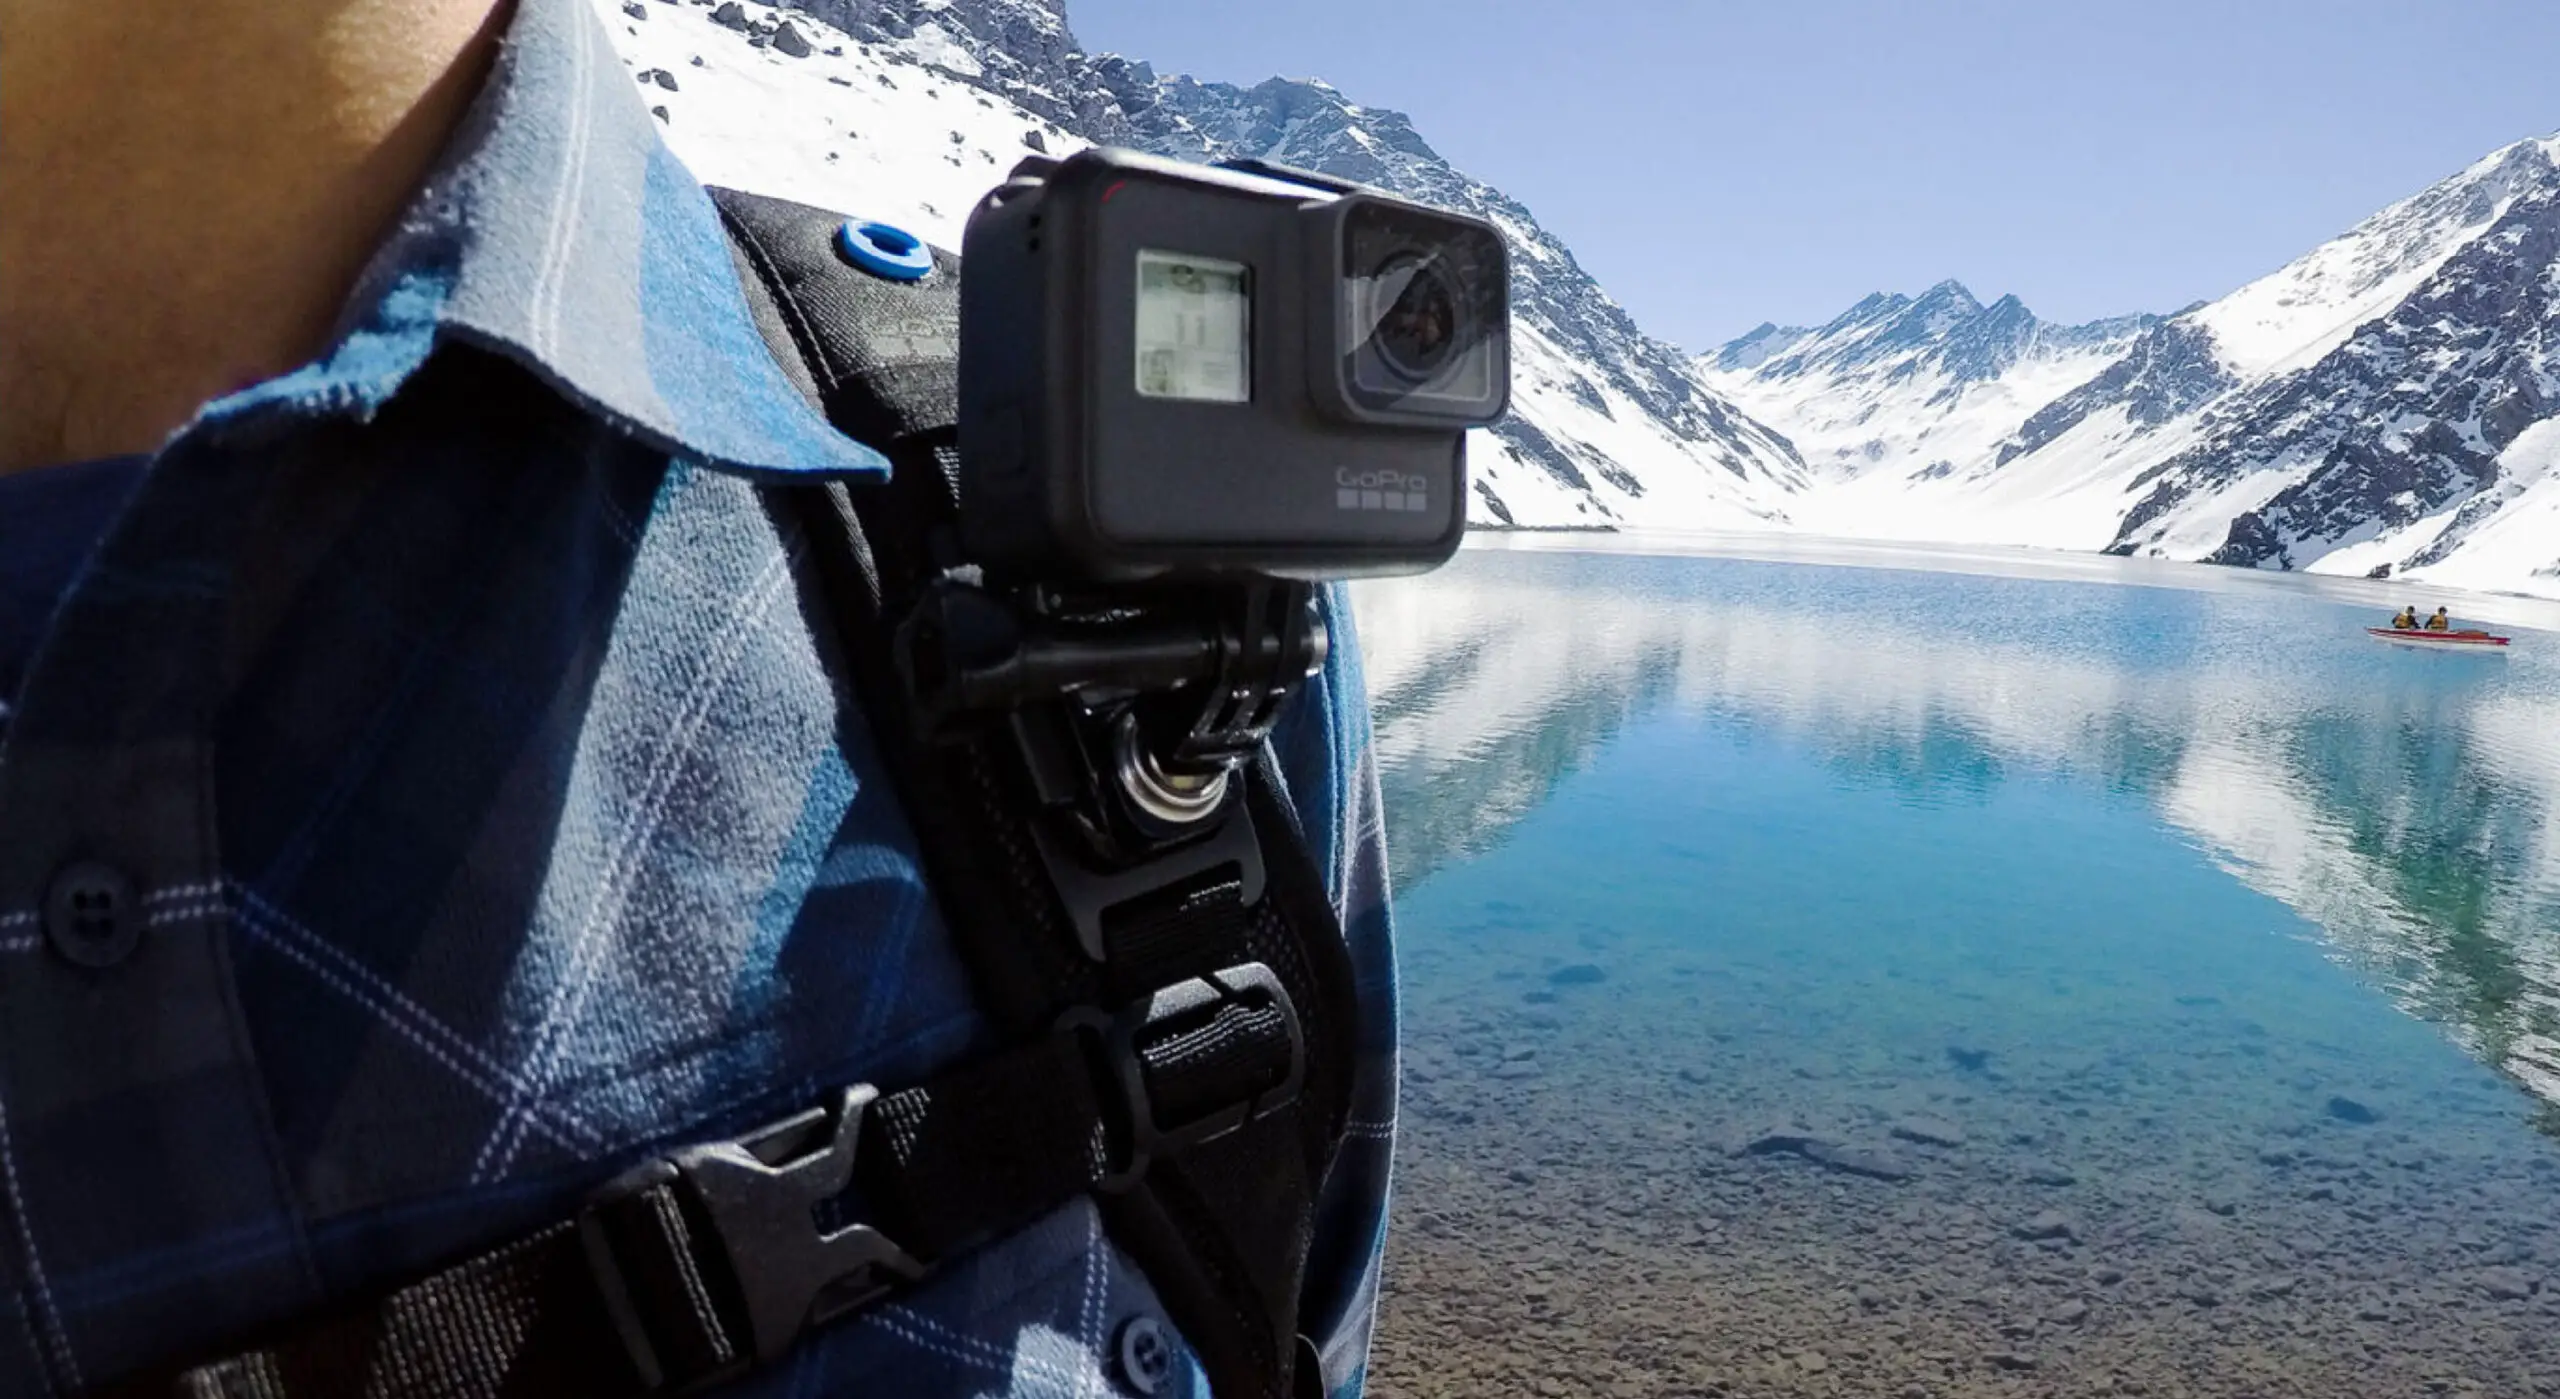 Temperatura ambiente muito baixa: O congelamento da câmera GoPro pode ocorrer em condições de temperaturas extremamente frias.
Bateria descarregada: Se a bateria estiver fraca ou completamente descarregada, a câmera pode congelar durante o uso.